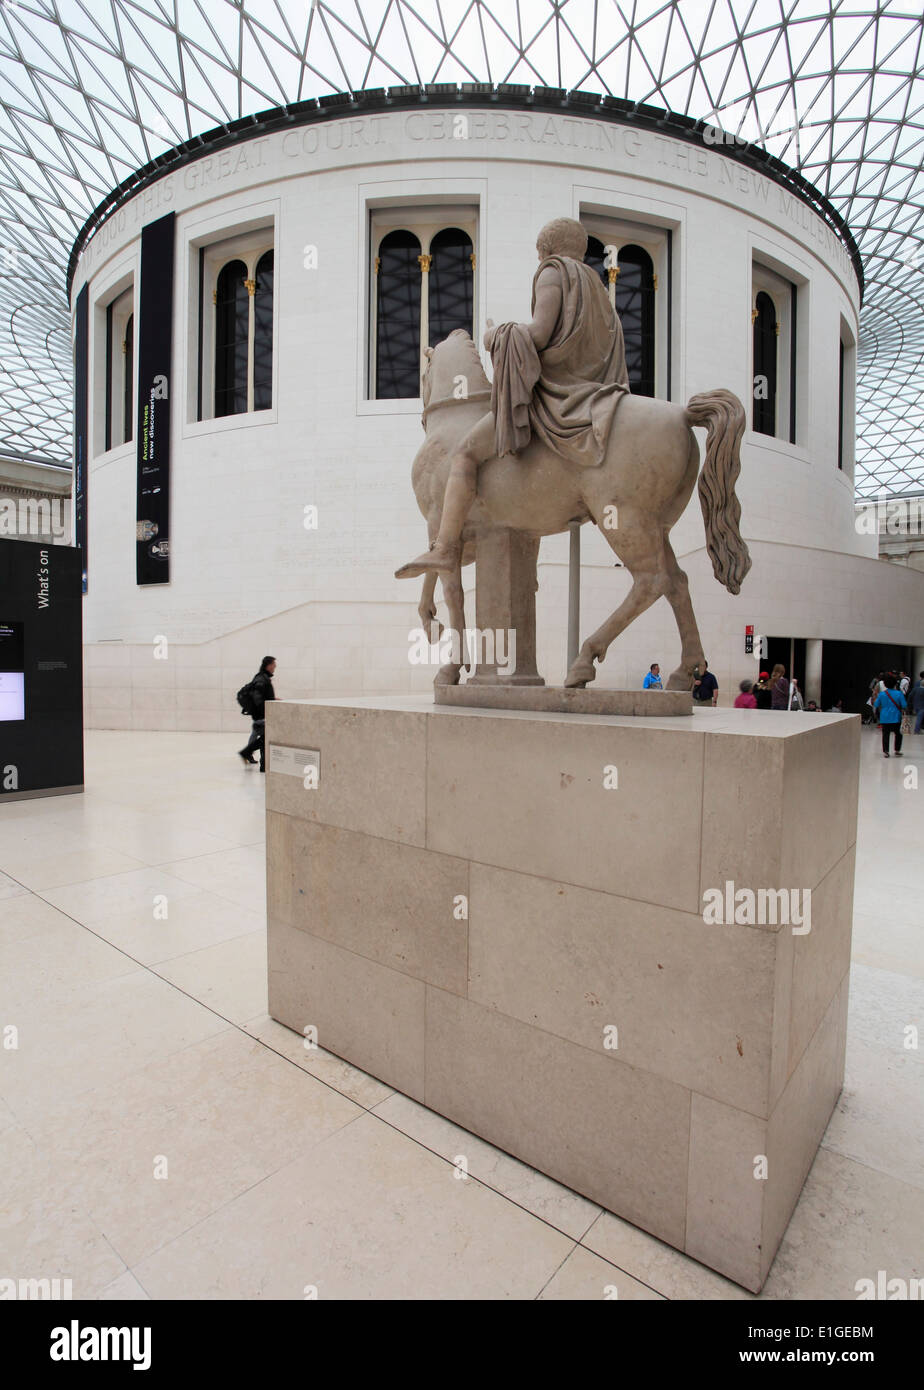 Regno Unito, Inghilterra, Londra, British Museum, Grande Corte, persone, Norman Foster architetto, Foto Stock